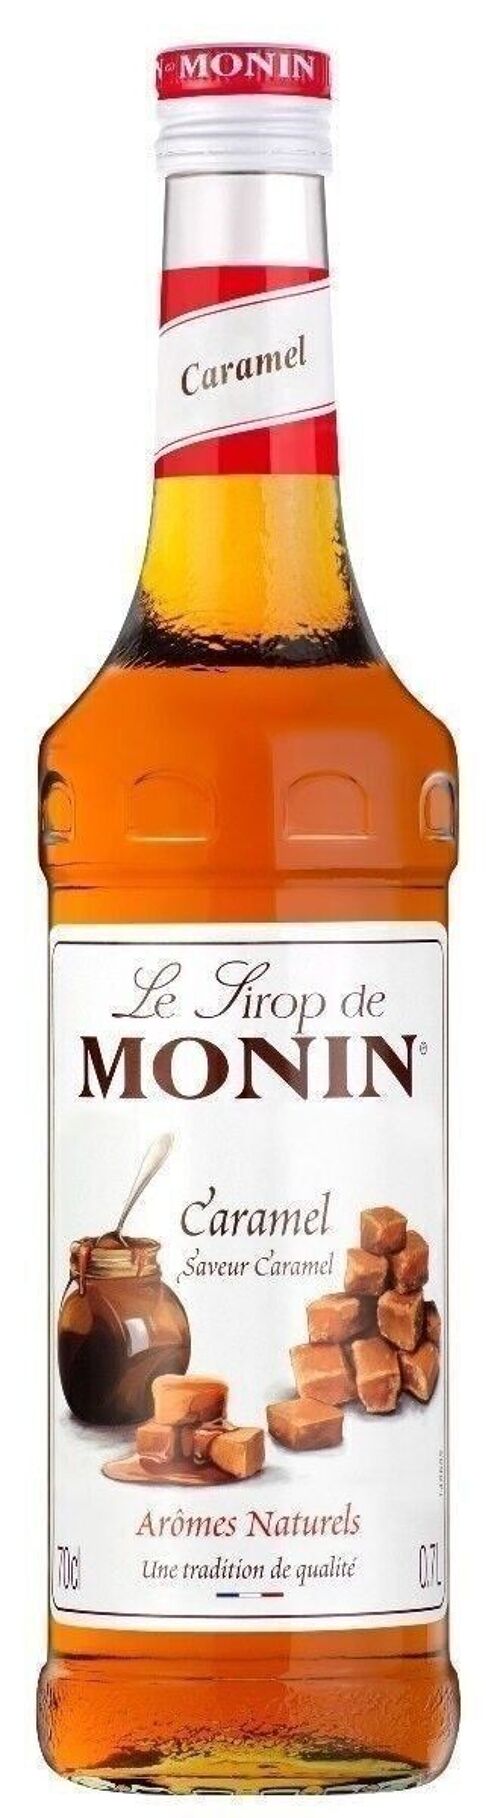 Sirop de Caramel MONIN pour aromatiser vos desserts de la fête des mères - Arômes naturels - 70cl